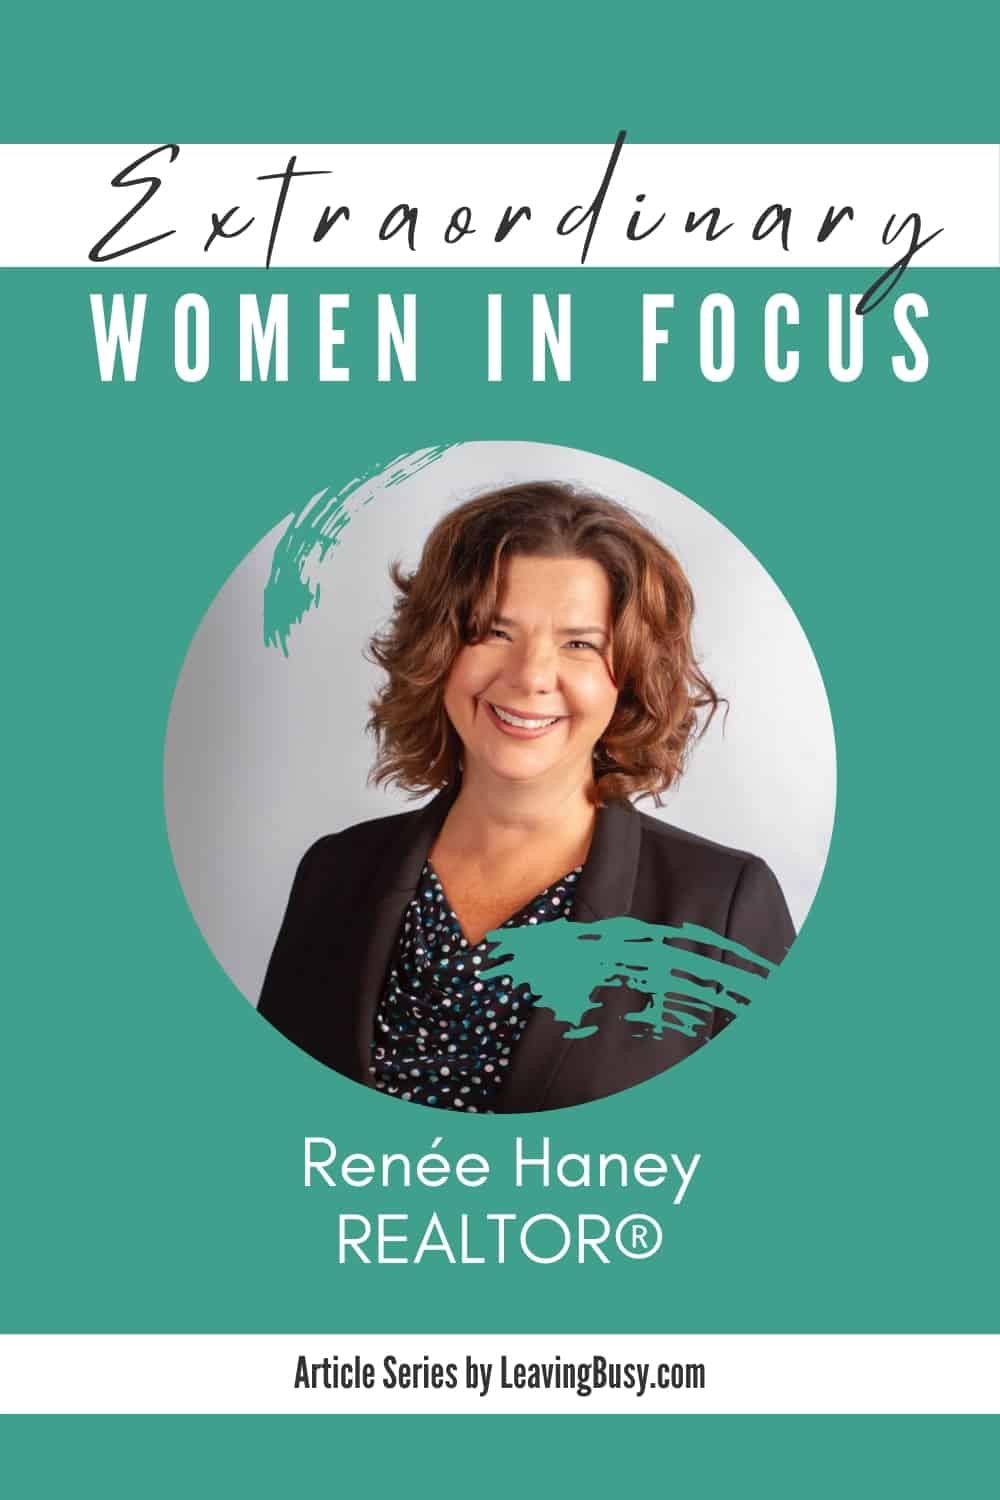 Women in Focus-Renée Haney for Pinterest (2)